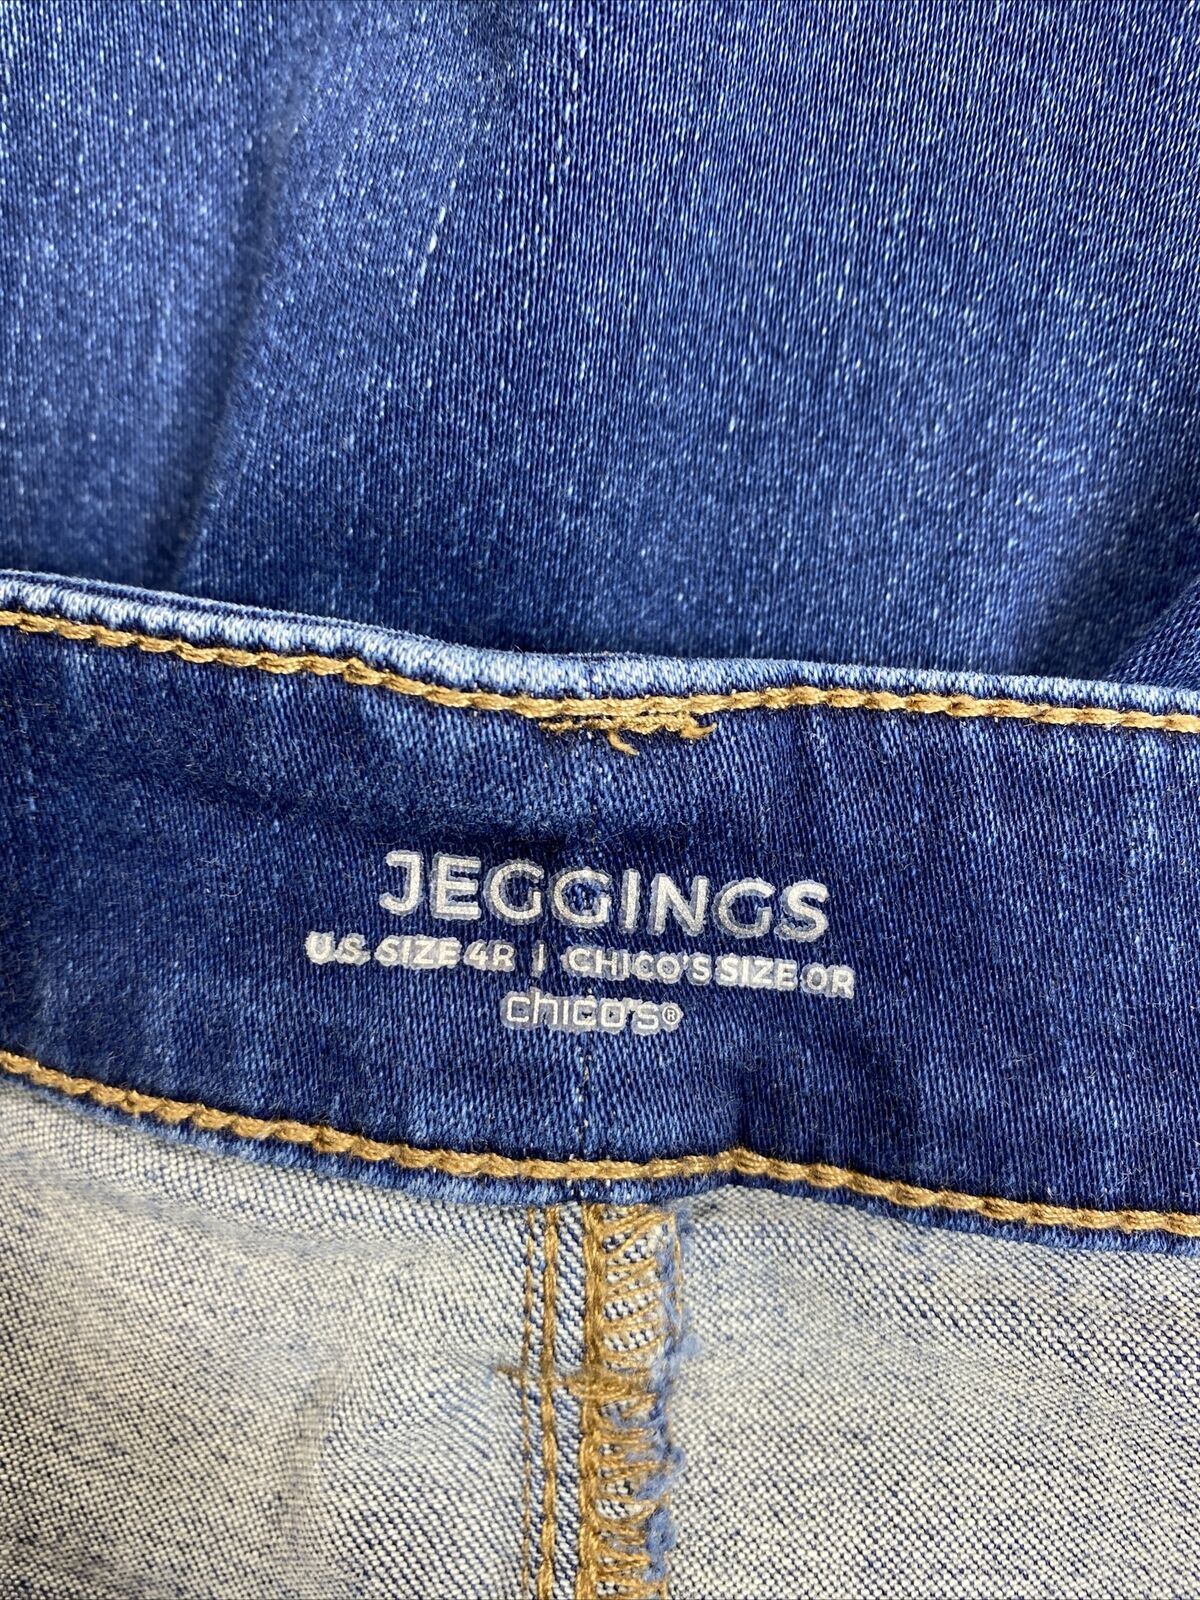 Chico's Jeans Jegging de mezclilla adelgazantes con lavado medio para mujer - 4R